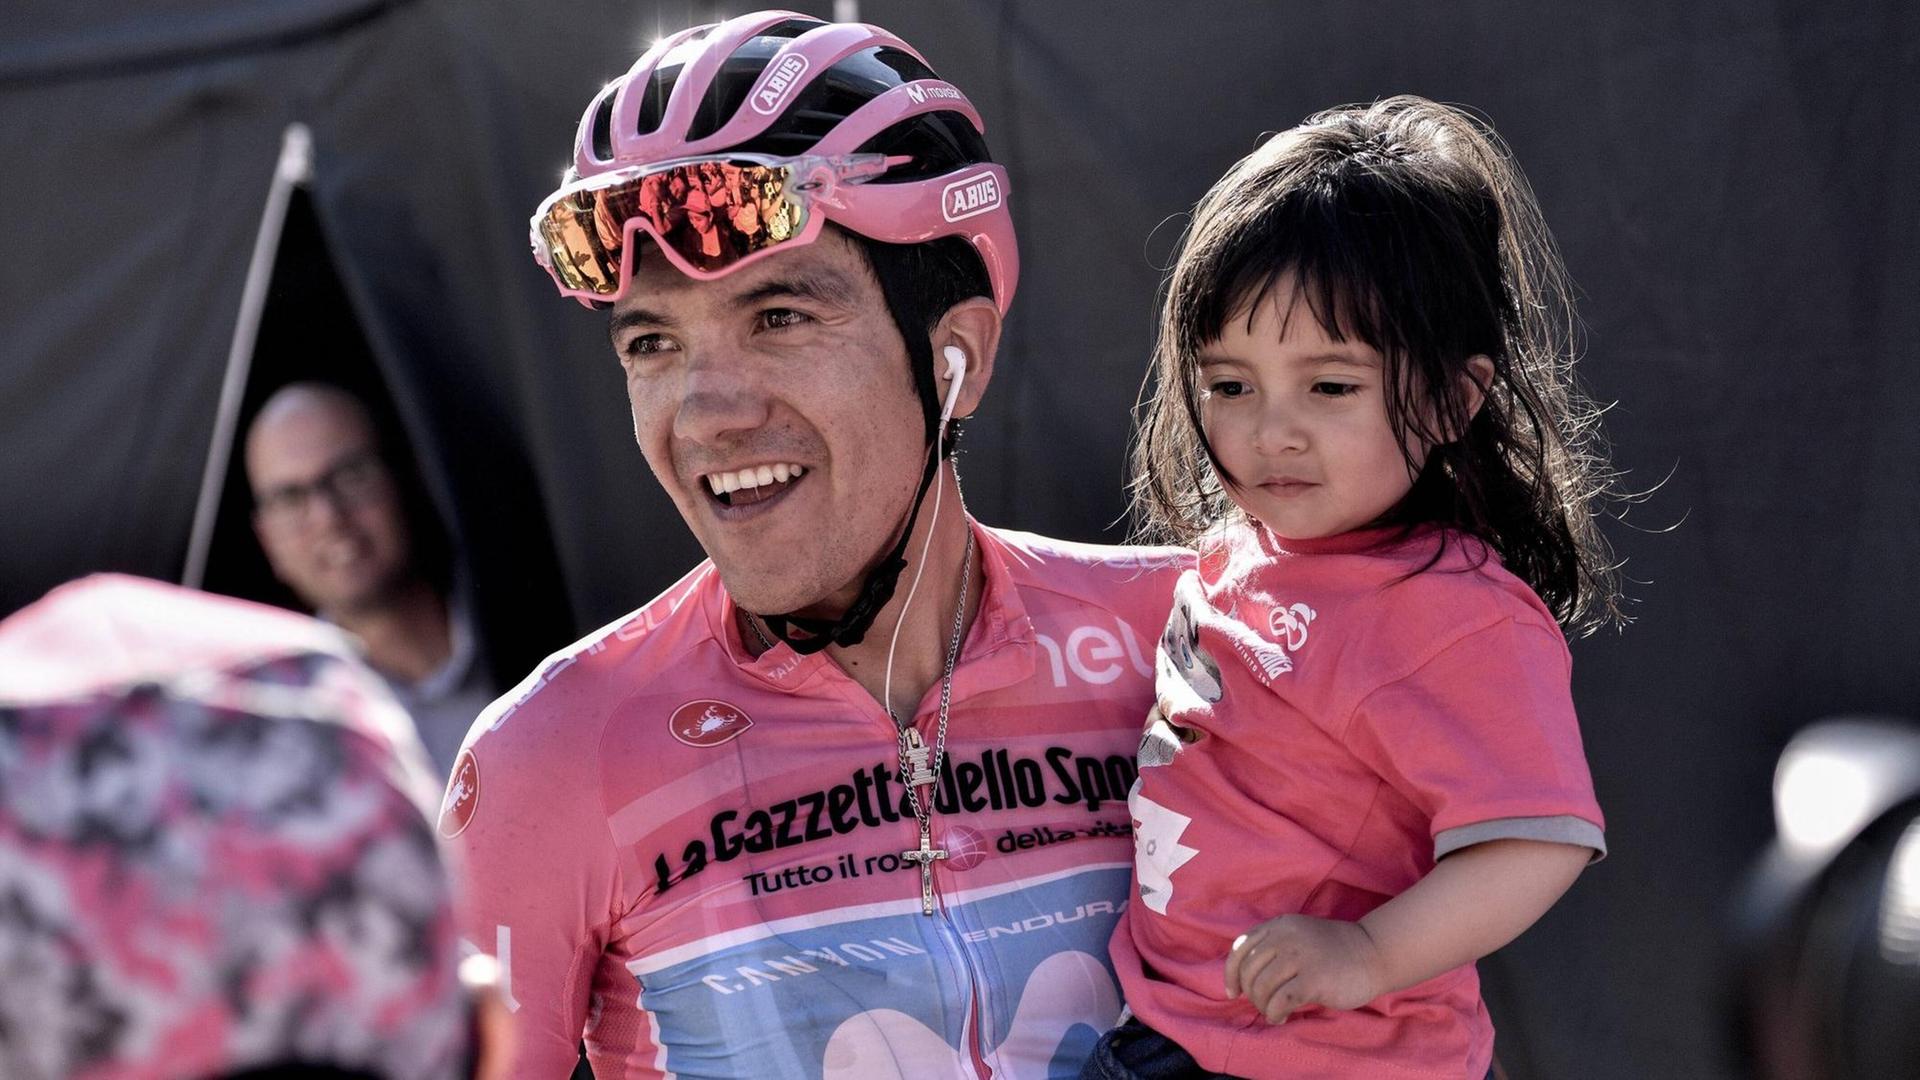 Richard Carapaz, diesjähriger Favorit beim Giro d'Italia, mit einem kleinen Mädchen auf dem Arm